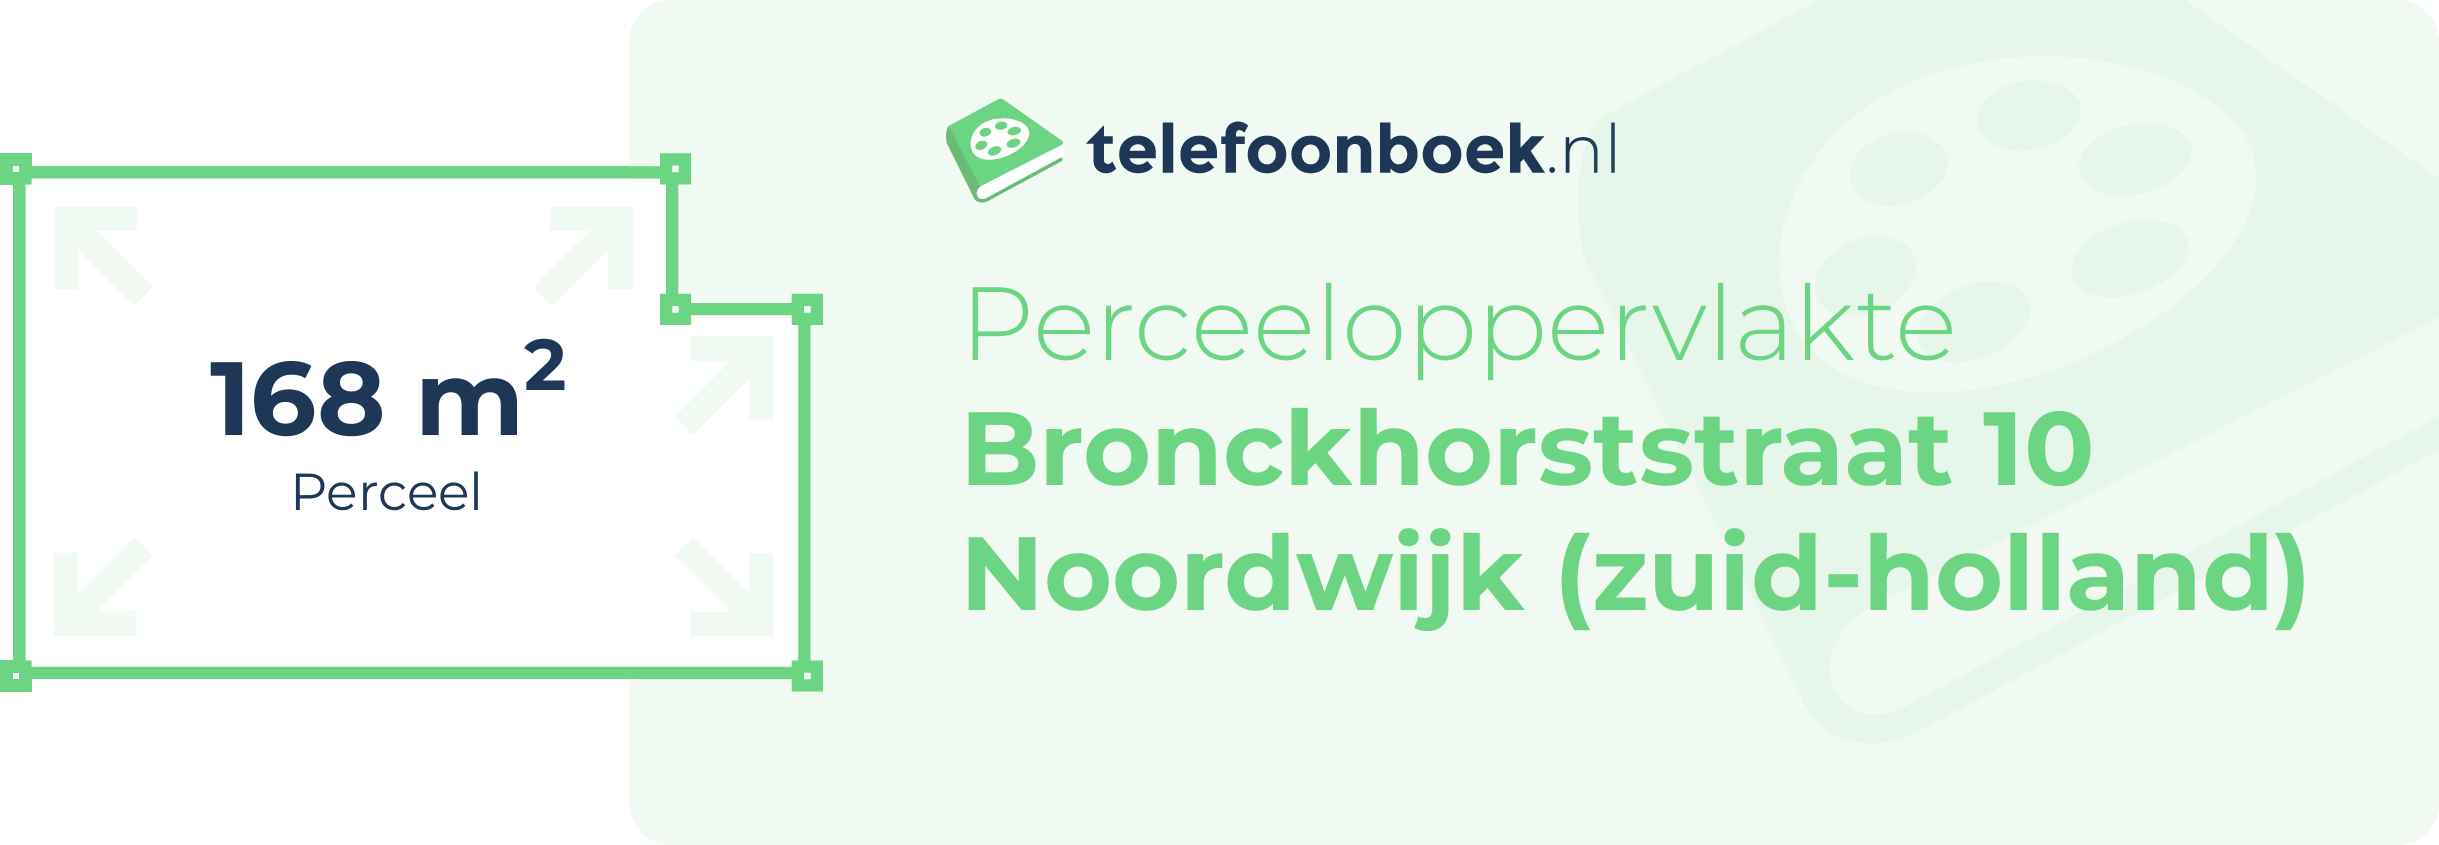 Perceeloppervlakte Bronckhorststraat 10 Noordwijk (Zuid-Holland)